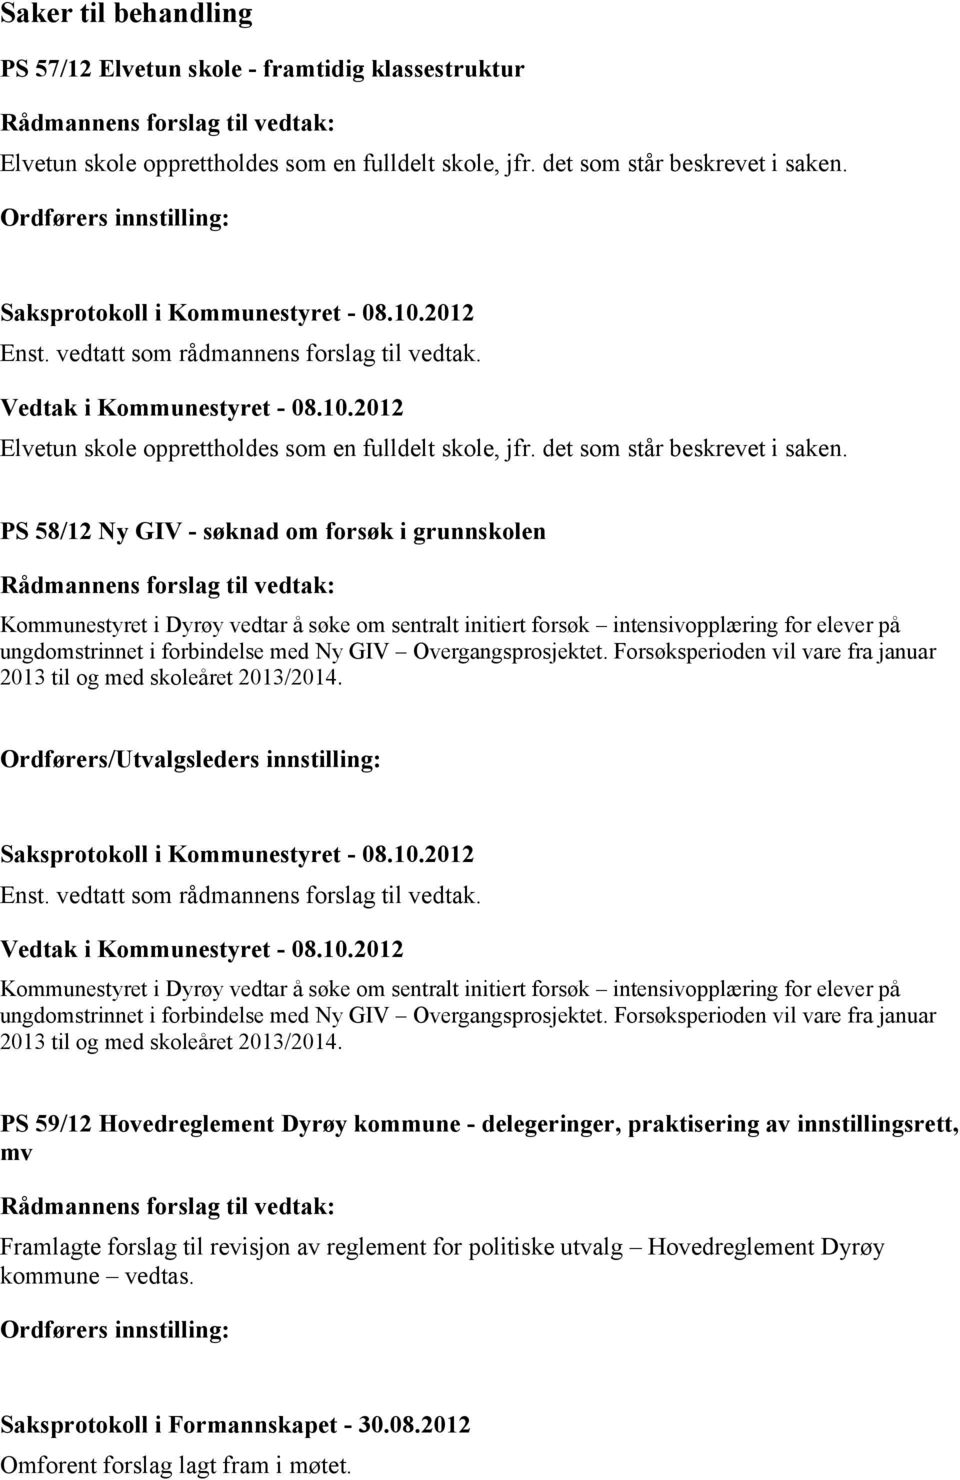 PS 58/12 Ny GIV - søknad om forsøk i grunnskolen Kommunestyret i Dyrøy vedtar å søke om sentralt initiert forsøk intensivopplæring for elever på ungdomstrinnet i forbindelse med Ny GIV